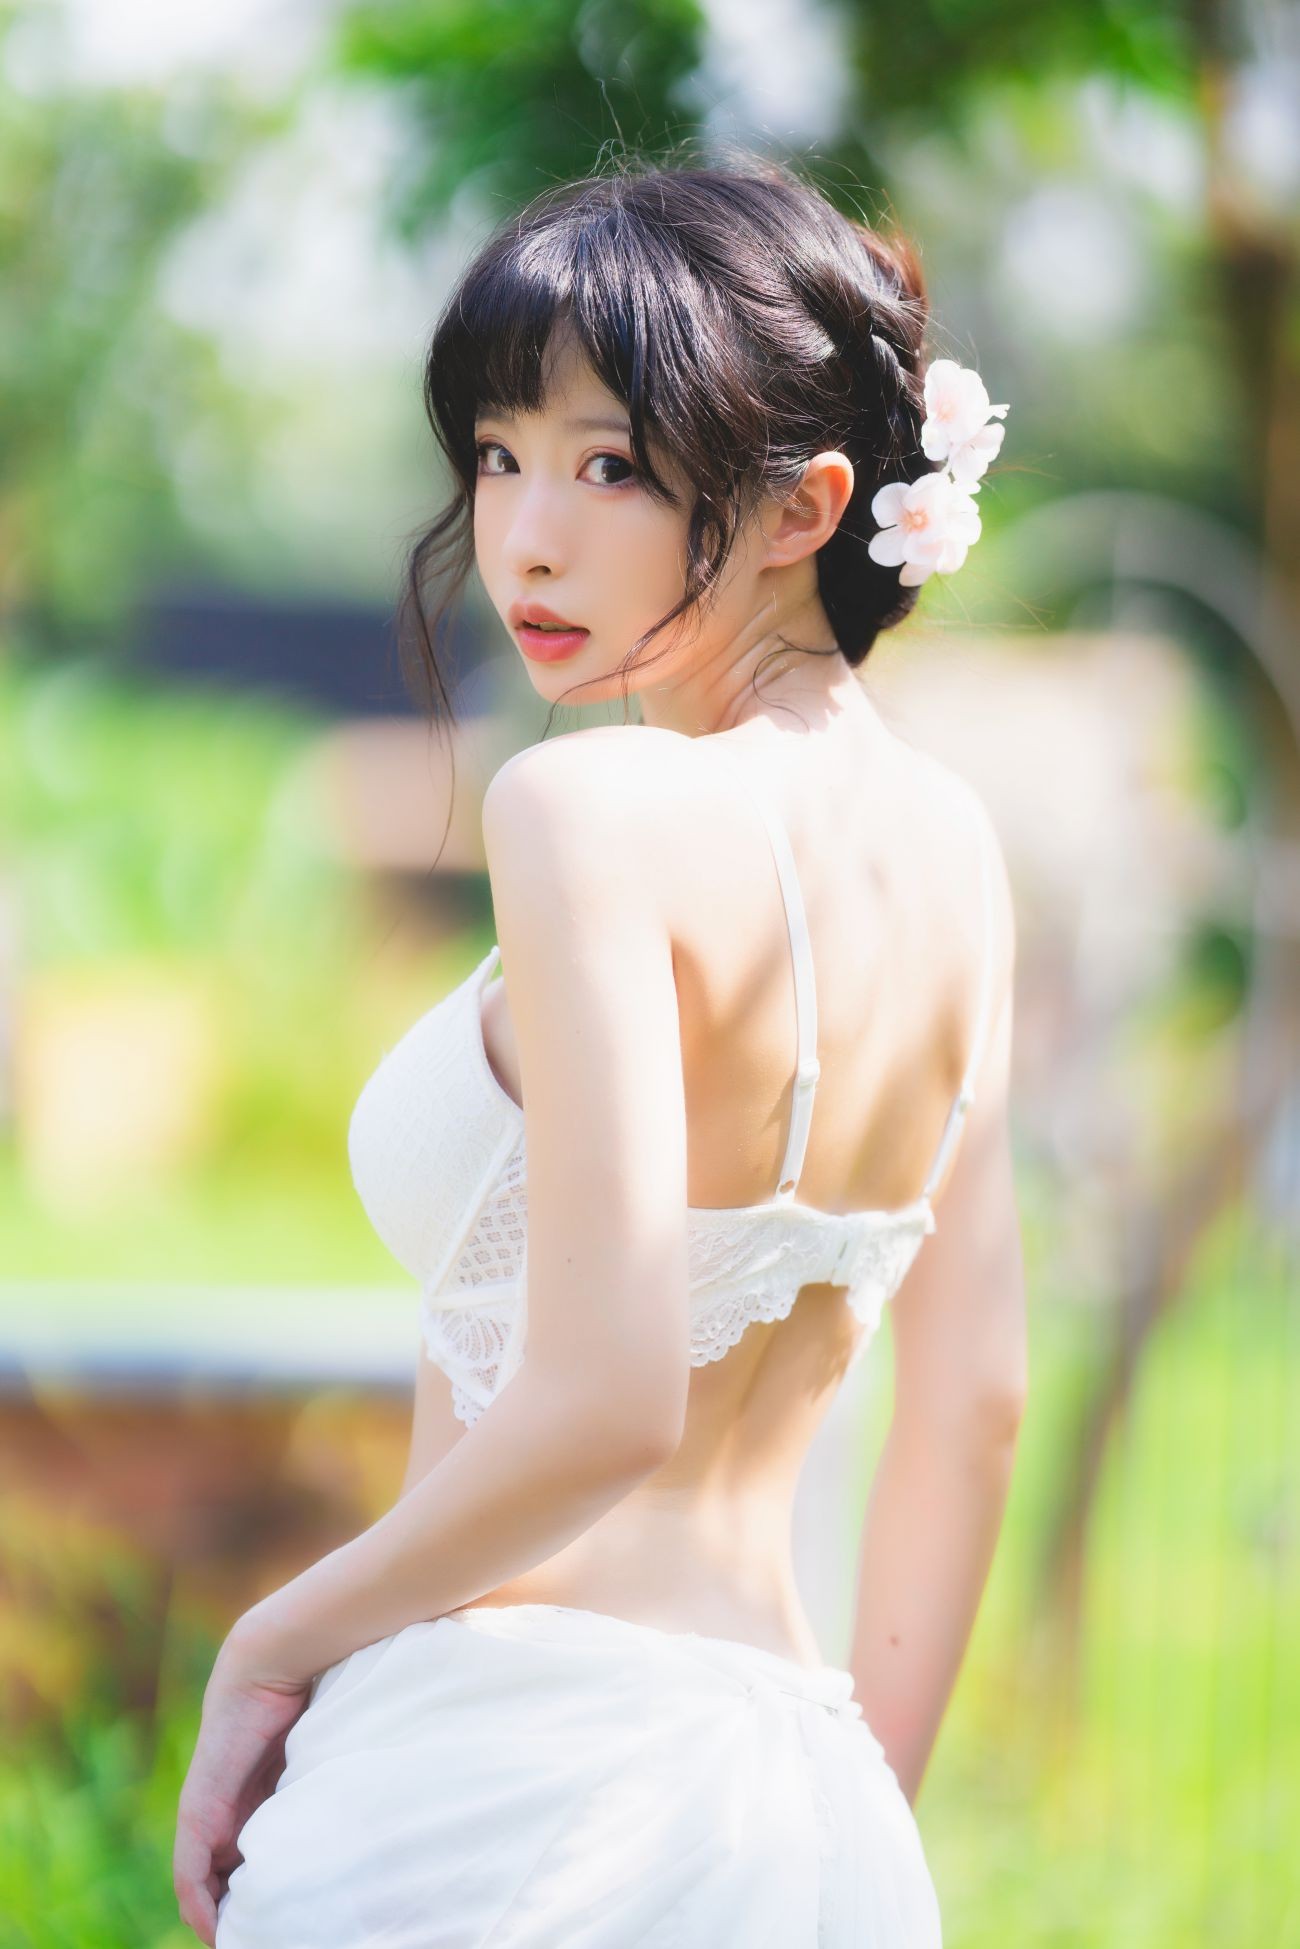 微博美少女清水由乃Cosplay性感写真蕾丝花园 (29)